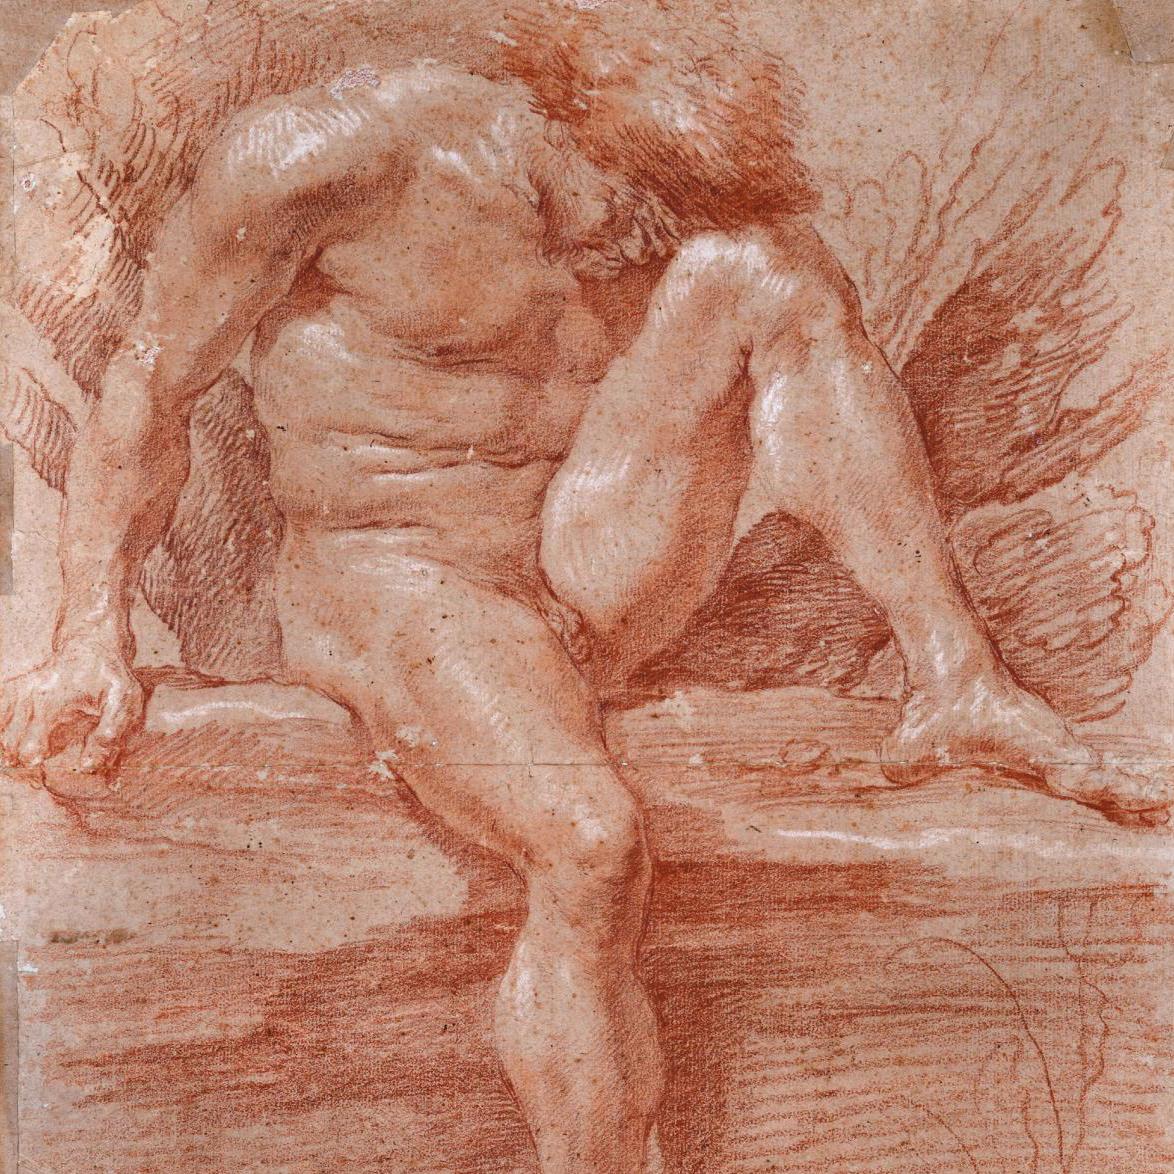 Gian Lorenzo Bernini Glorifies the Male Body